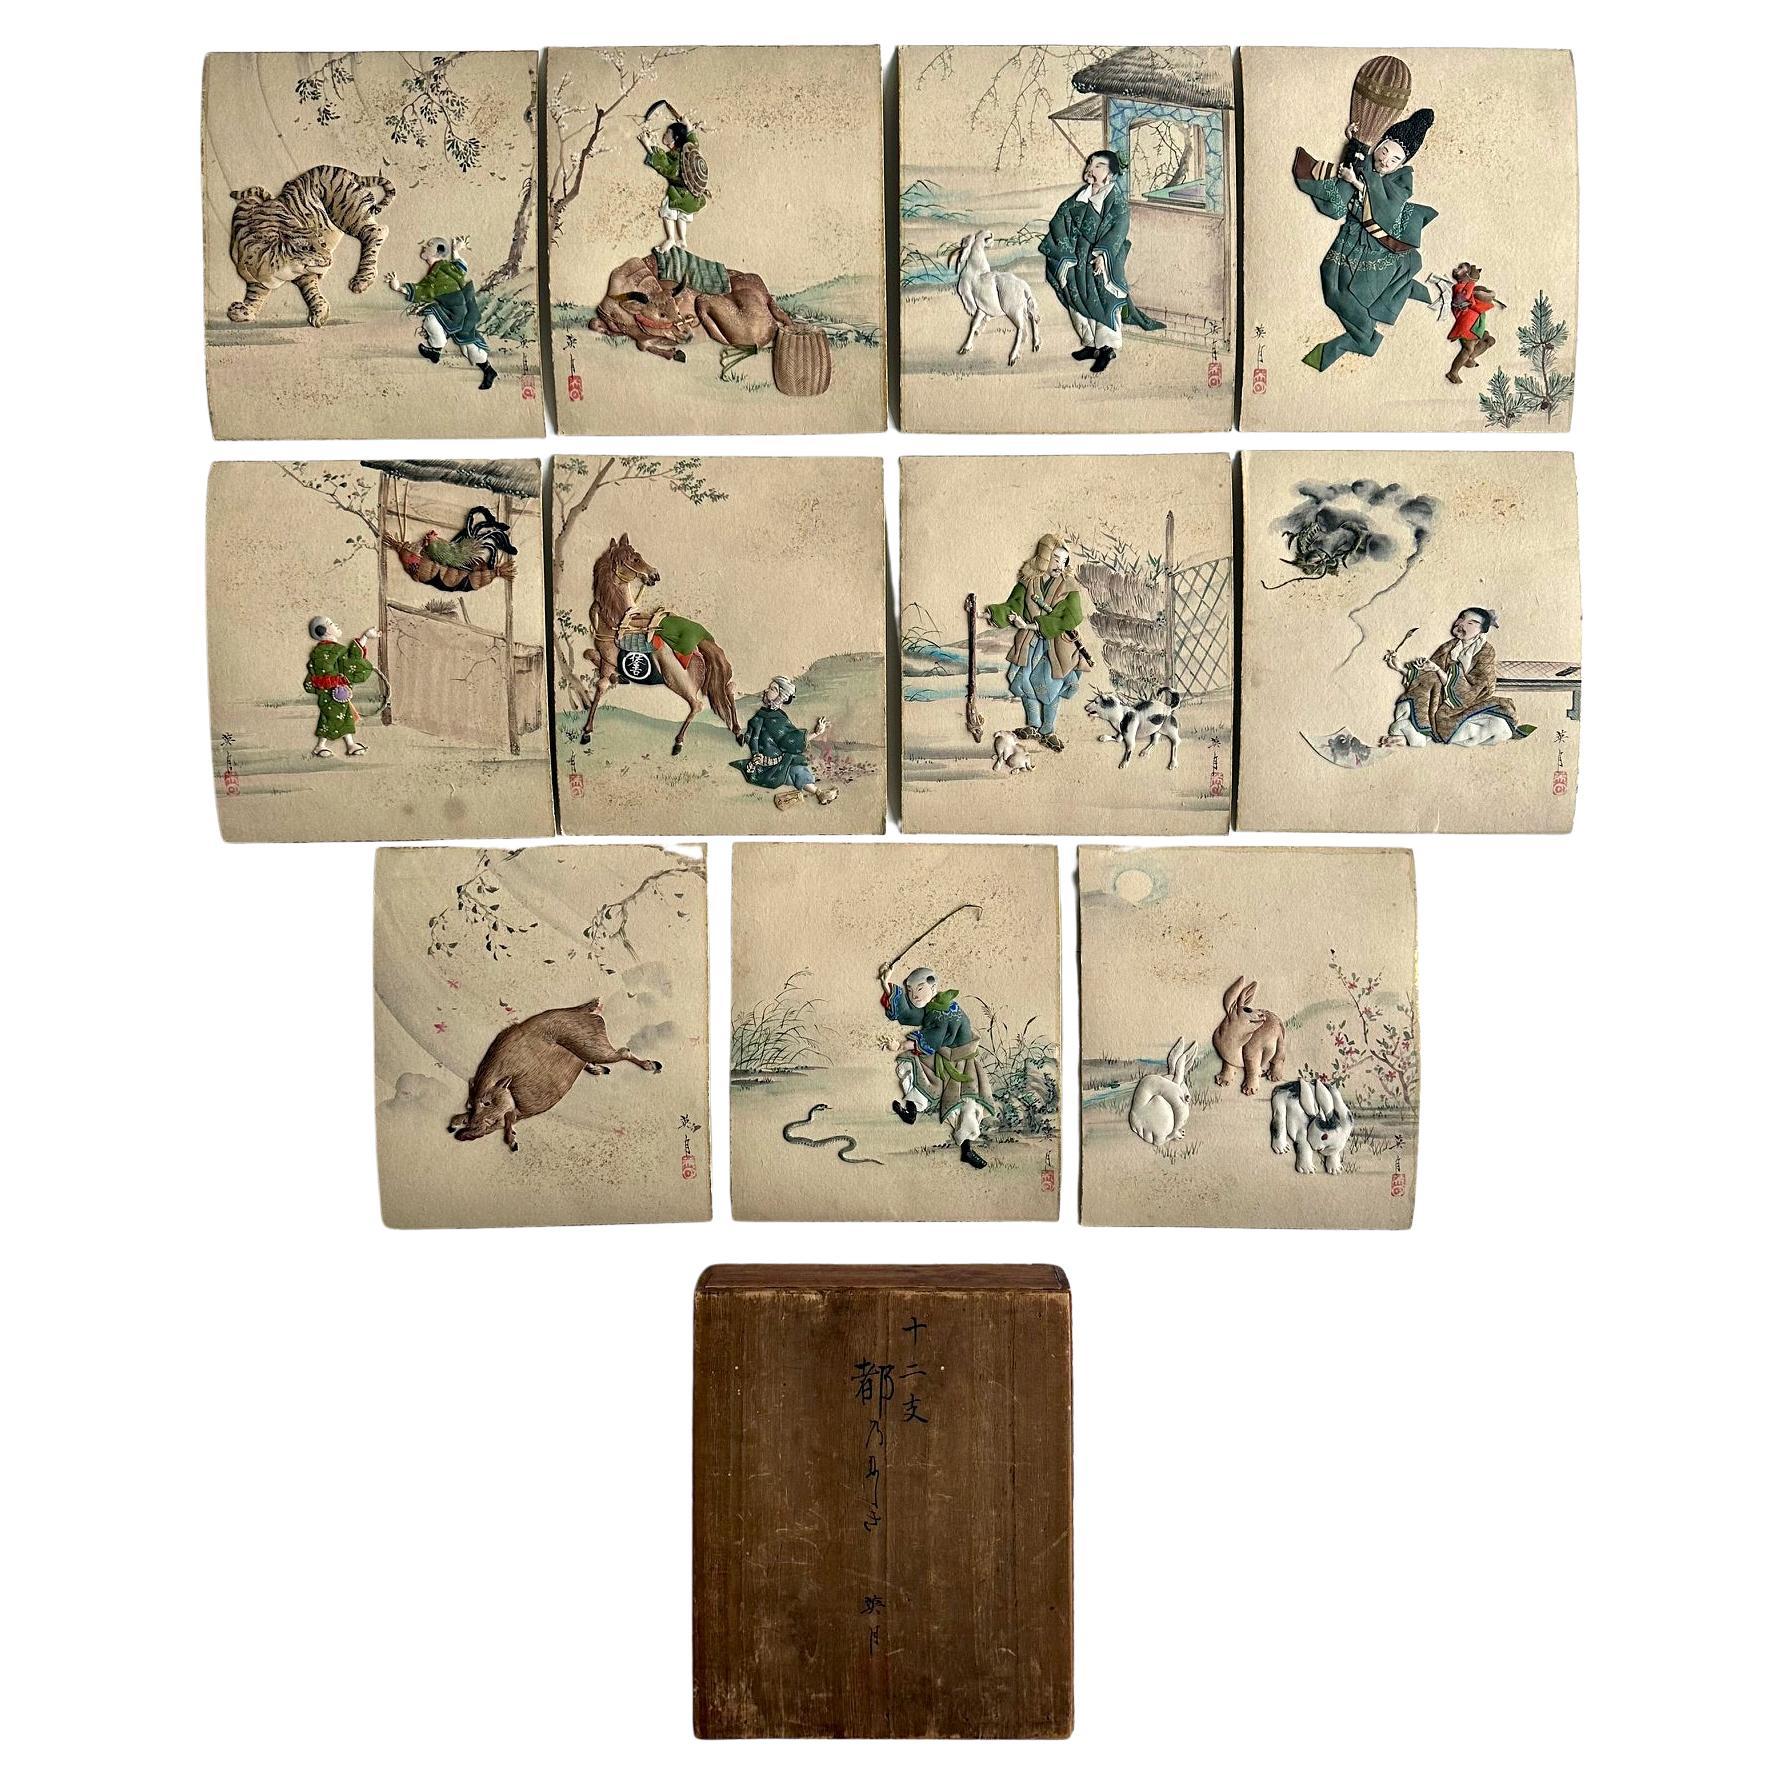 Seltenes historisches japanisches Set japanischer Oshi-E-Textil-Kunsttafeln aus der Meiji-Periode